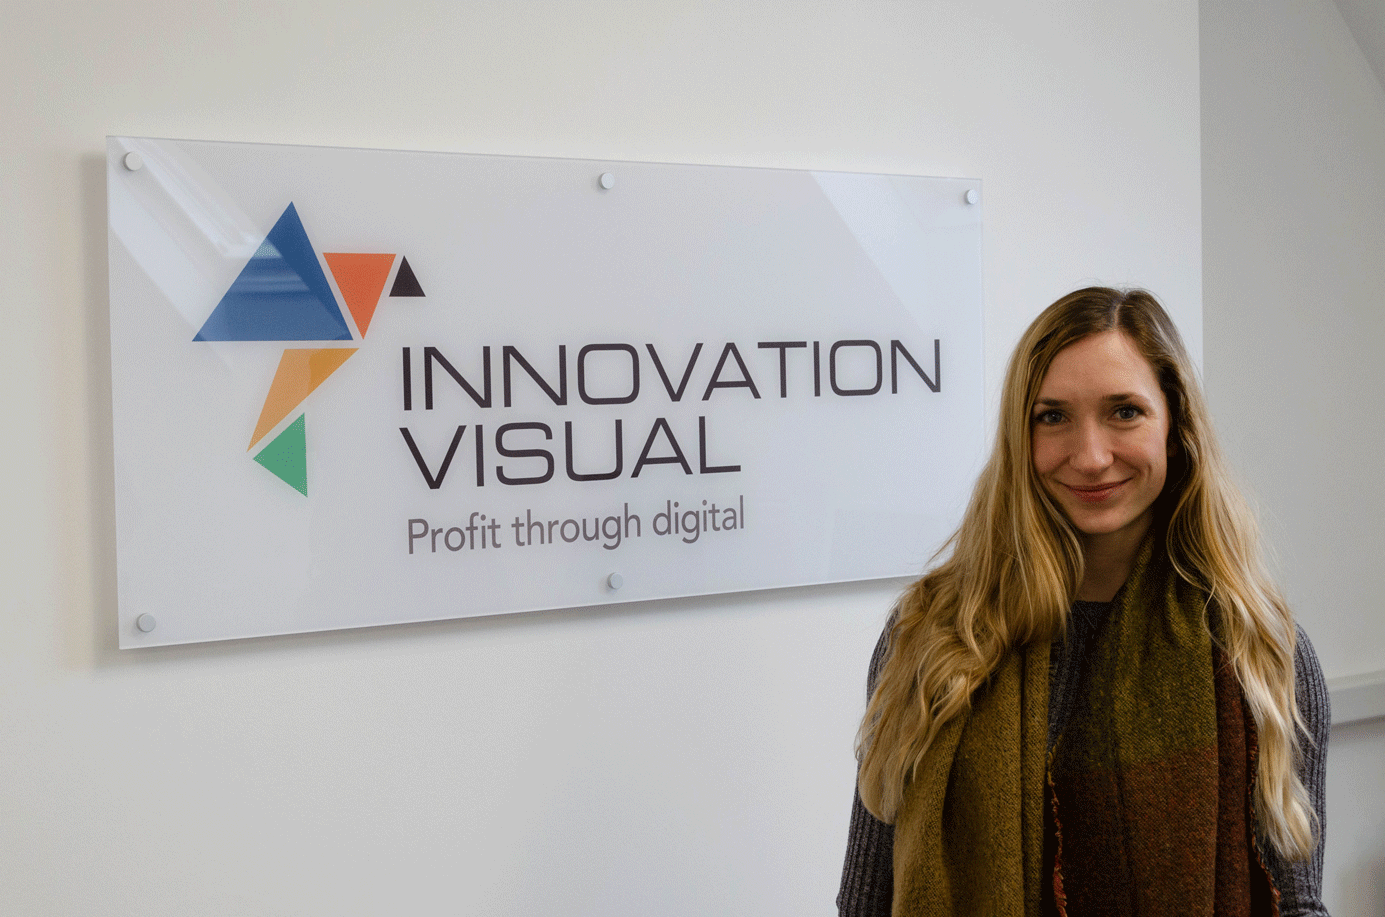 Miriam Gooch, Digital Marketing Executive for Innovation Visual in front of Innovation Visual Logo